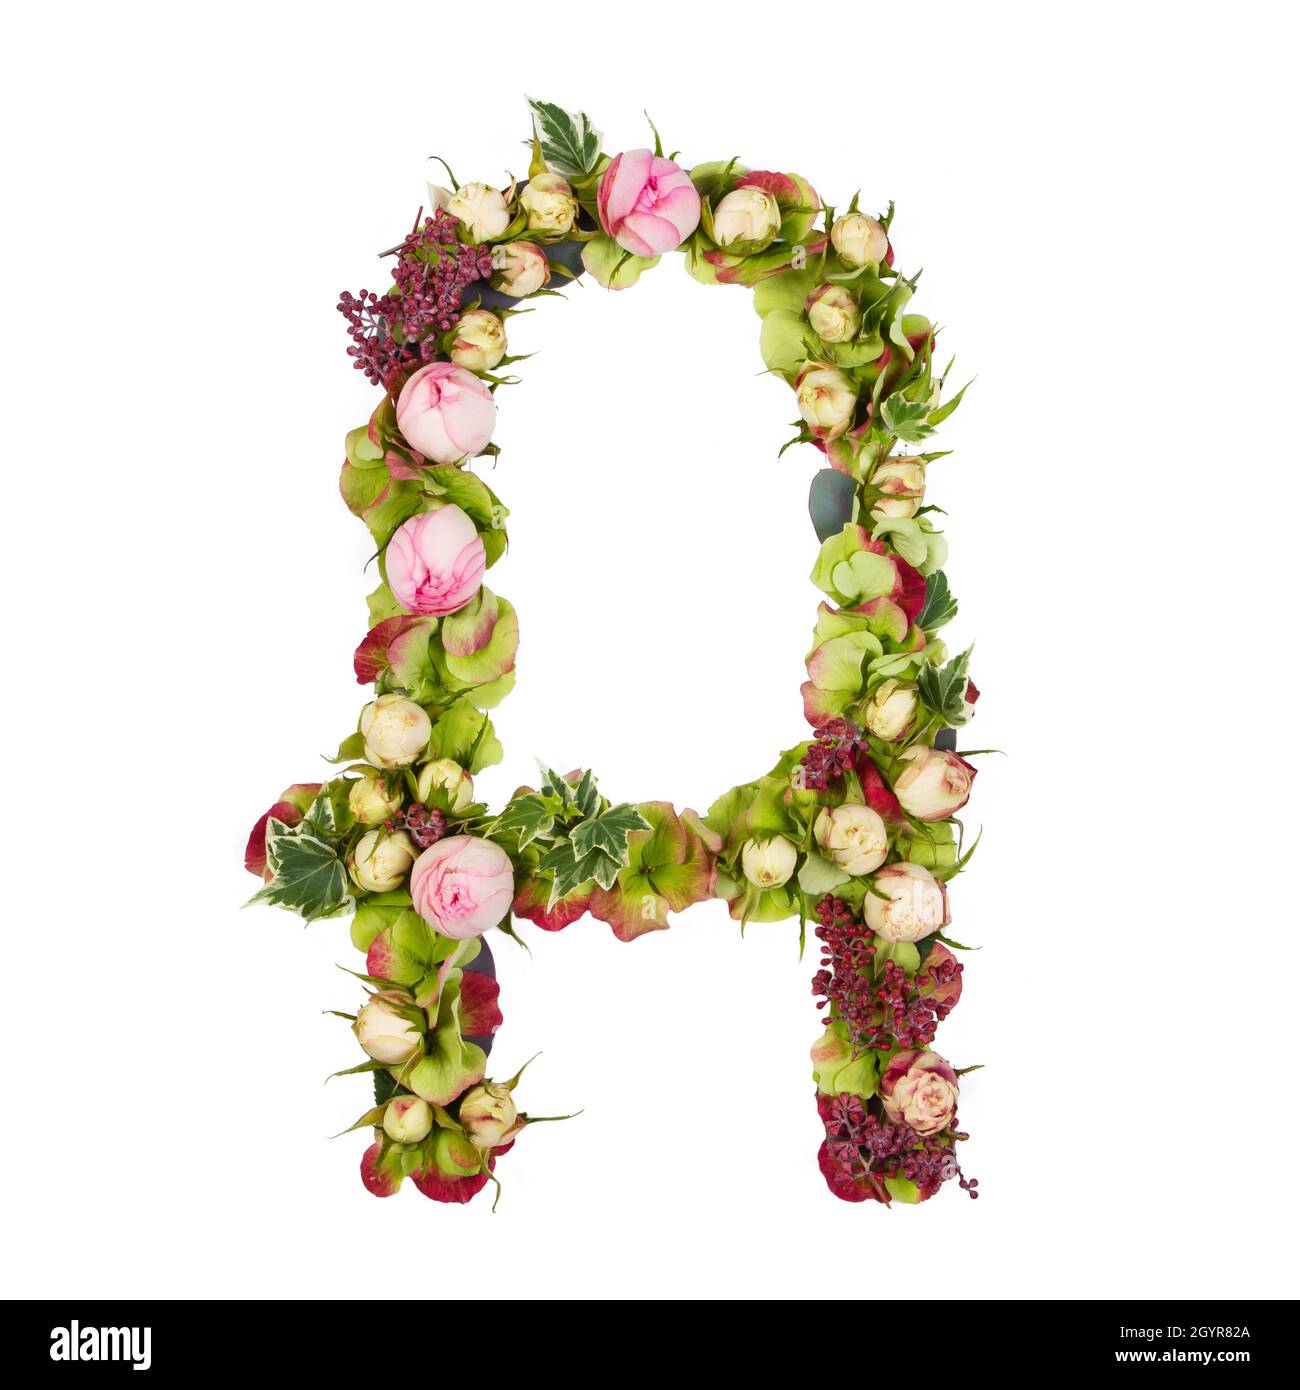 Lettera maiuscola parte di un insieme di lettere, numeri e simboli dell' alfabeto realizzato con fiori, rami e foglie su sfondo bianco Foto stock -  Alamy